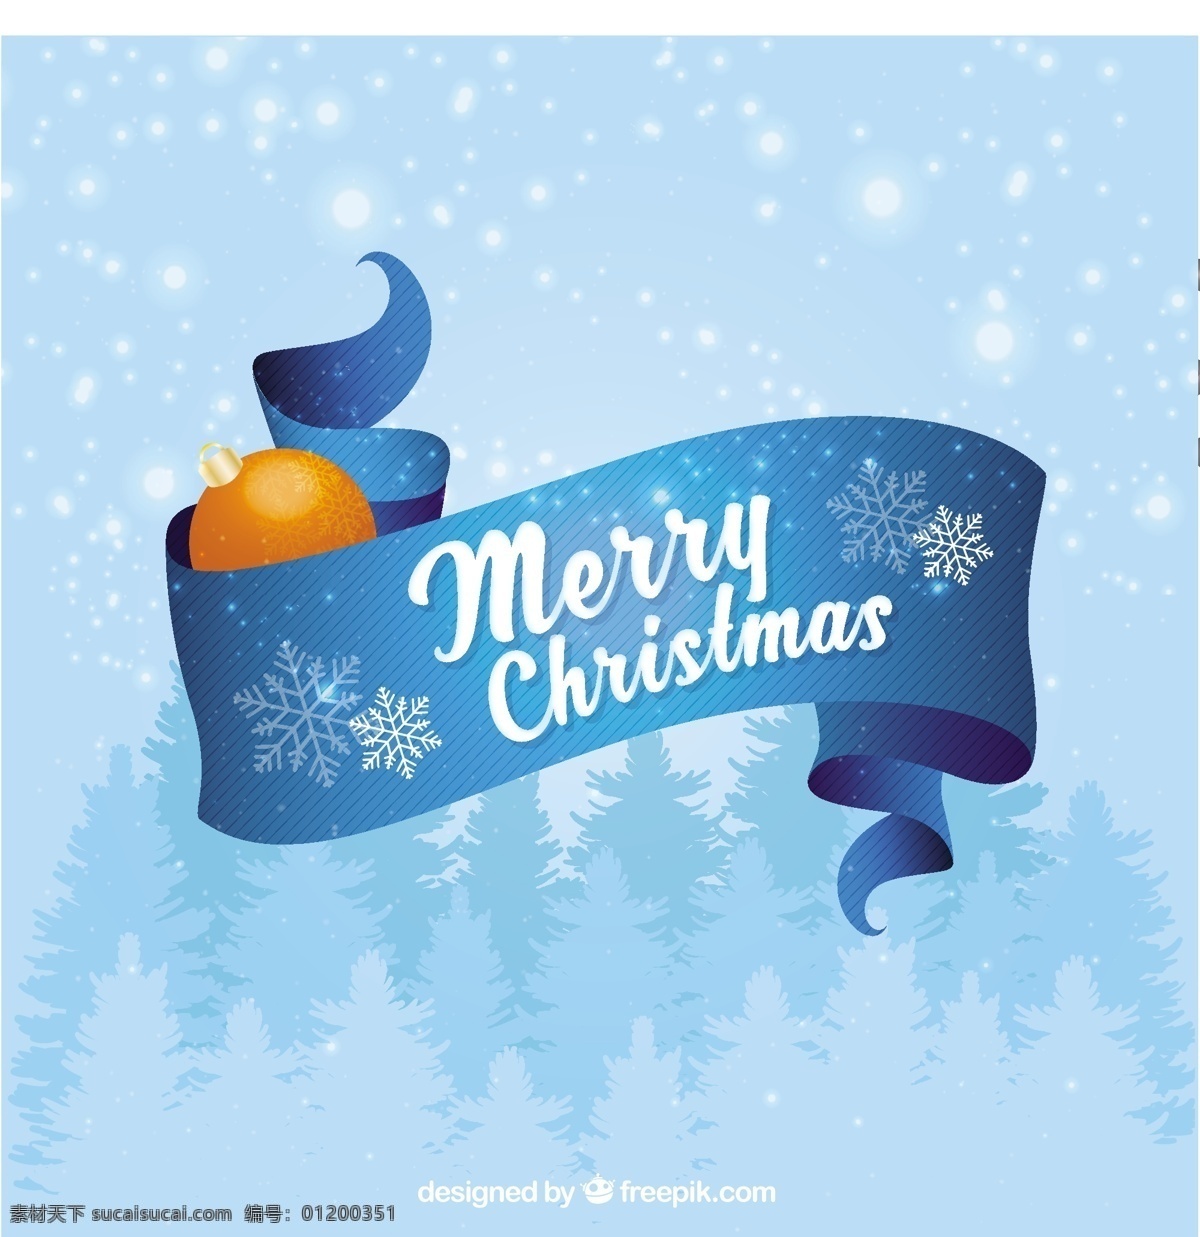 雪 背景 圣诞快乐 丝带 圣诞 标签 蓝色的背景 冬天 圣诞节 庆祝的节日 节日快乐 季节 青色 天蓝色